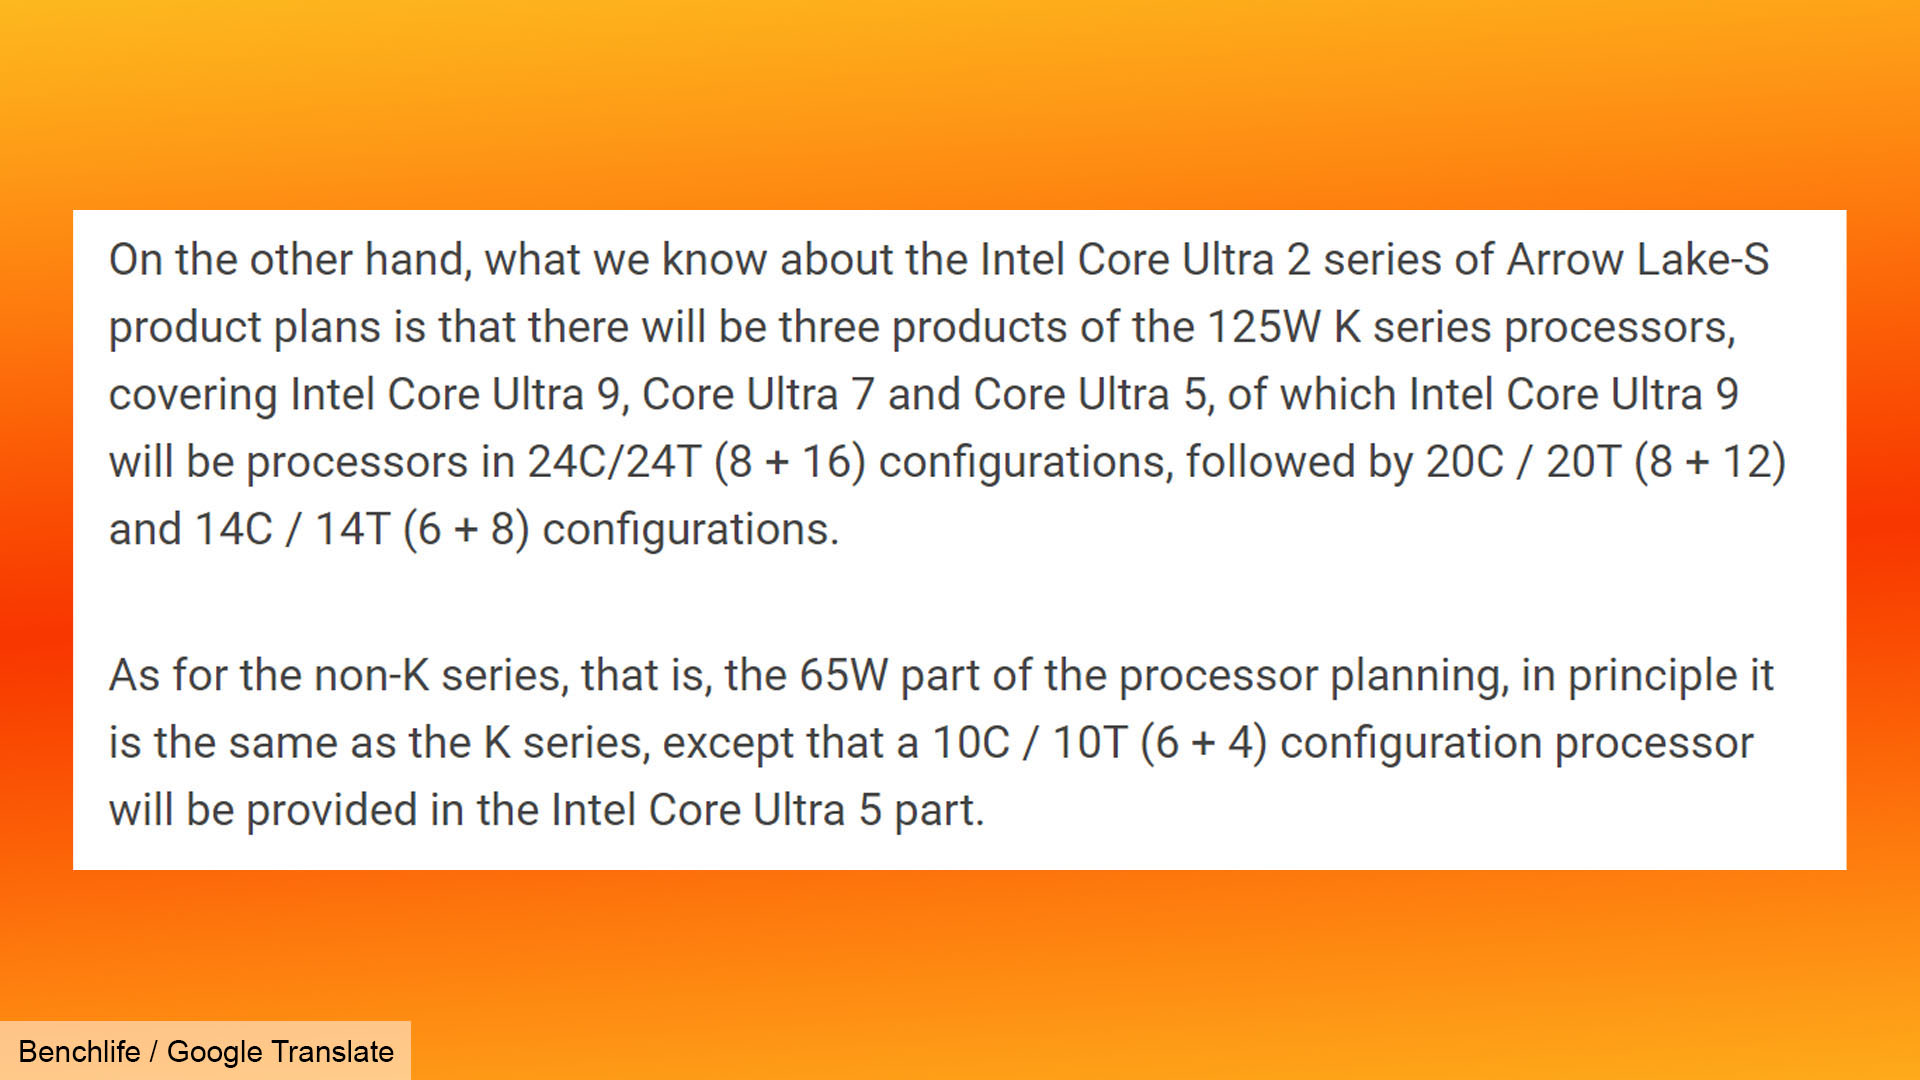 Intels neue Arrow-Lake-CPU-Kernspezifikationen sind gerade durchgesickert: Screenshot des Gerüchts über die Anzahl der Benchlife-Kerne